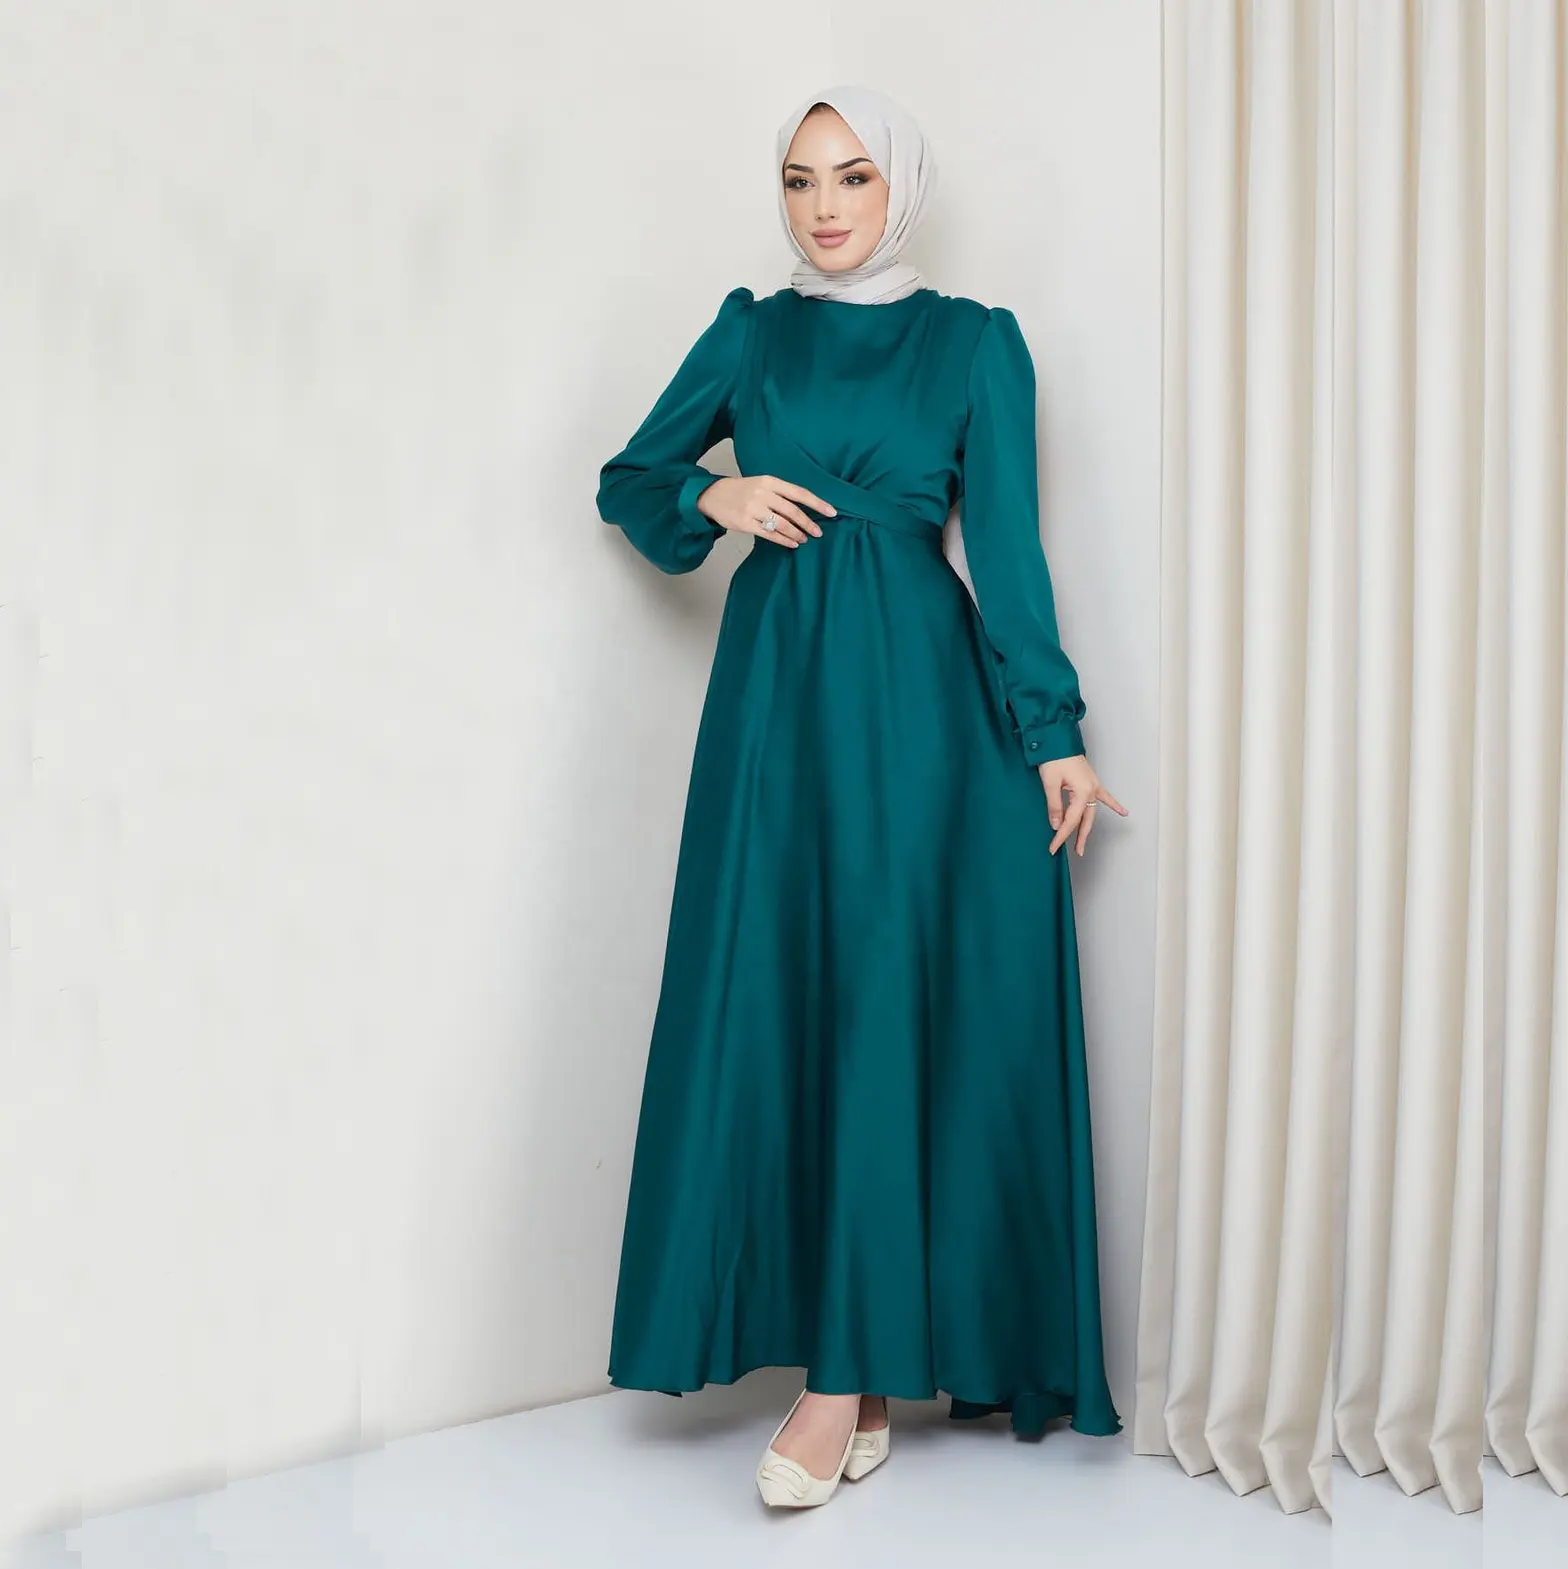 2023 dernières conceptions turc vert longue Abaya robe musulmane femmes caftan dubaï de vêtements islamiques modeste robe de soirée Abaya